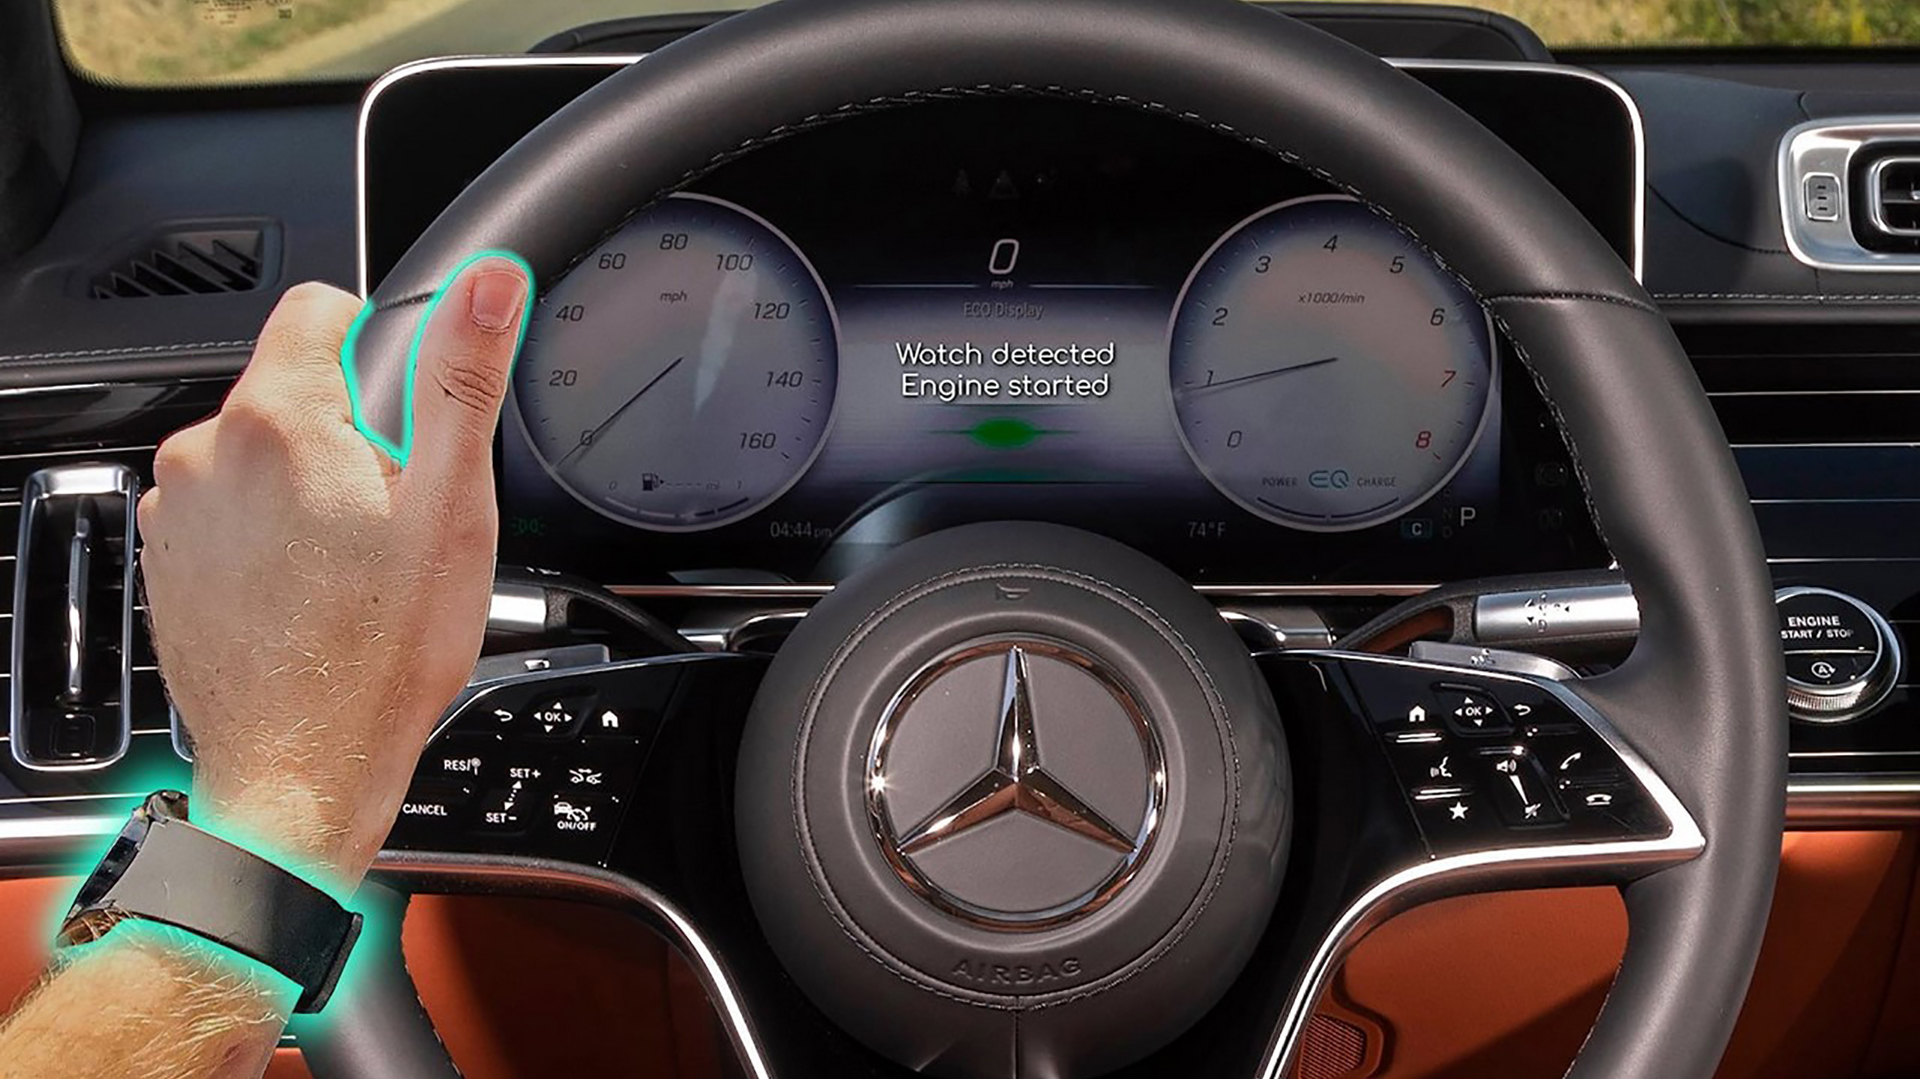 Mercedes patentó un modo de identificación del conductor, que verifica datos biométricos y su estado de salud antes de encender el motor